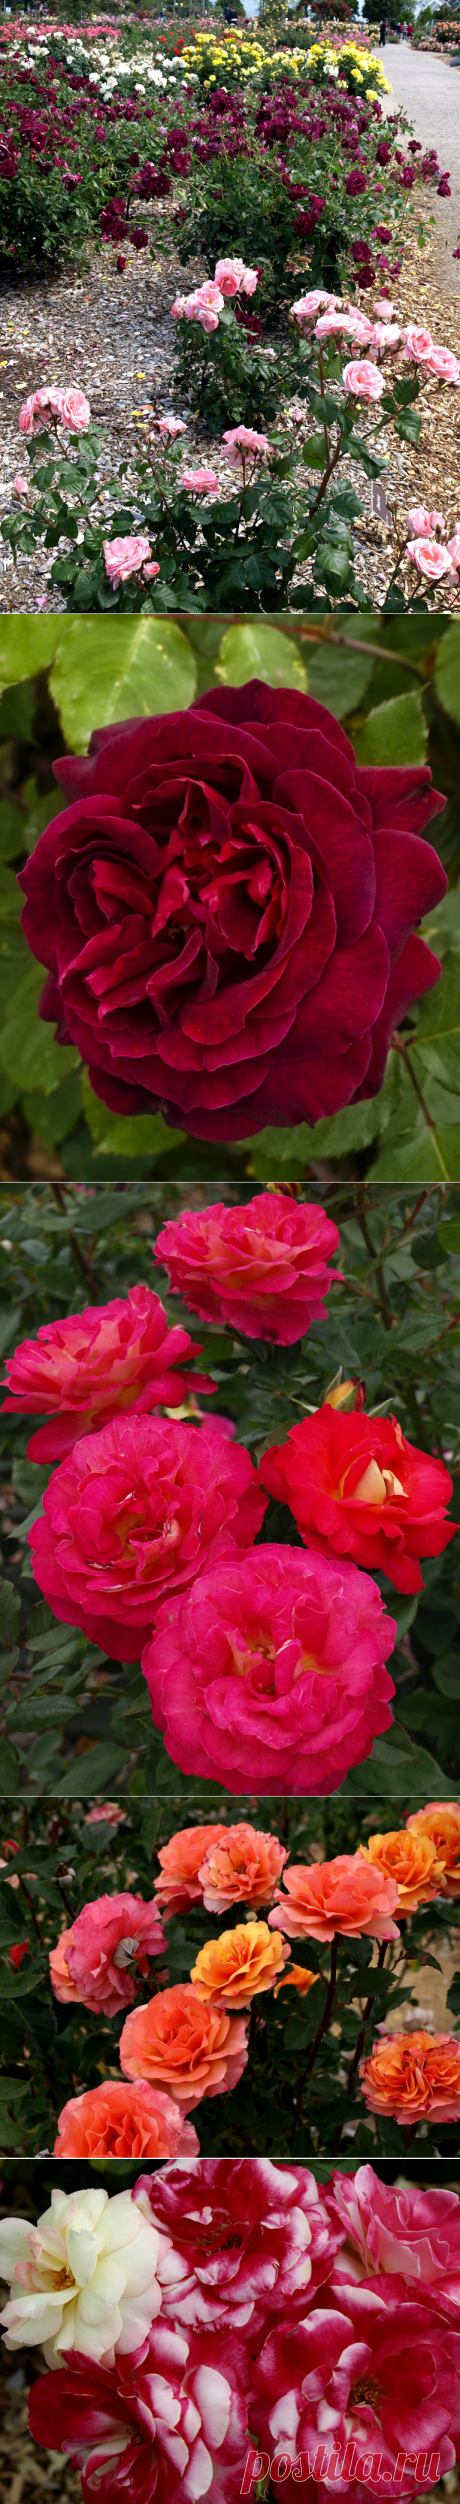 Сад роз в Ботаническом саду Аделаиды,Австралия